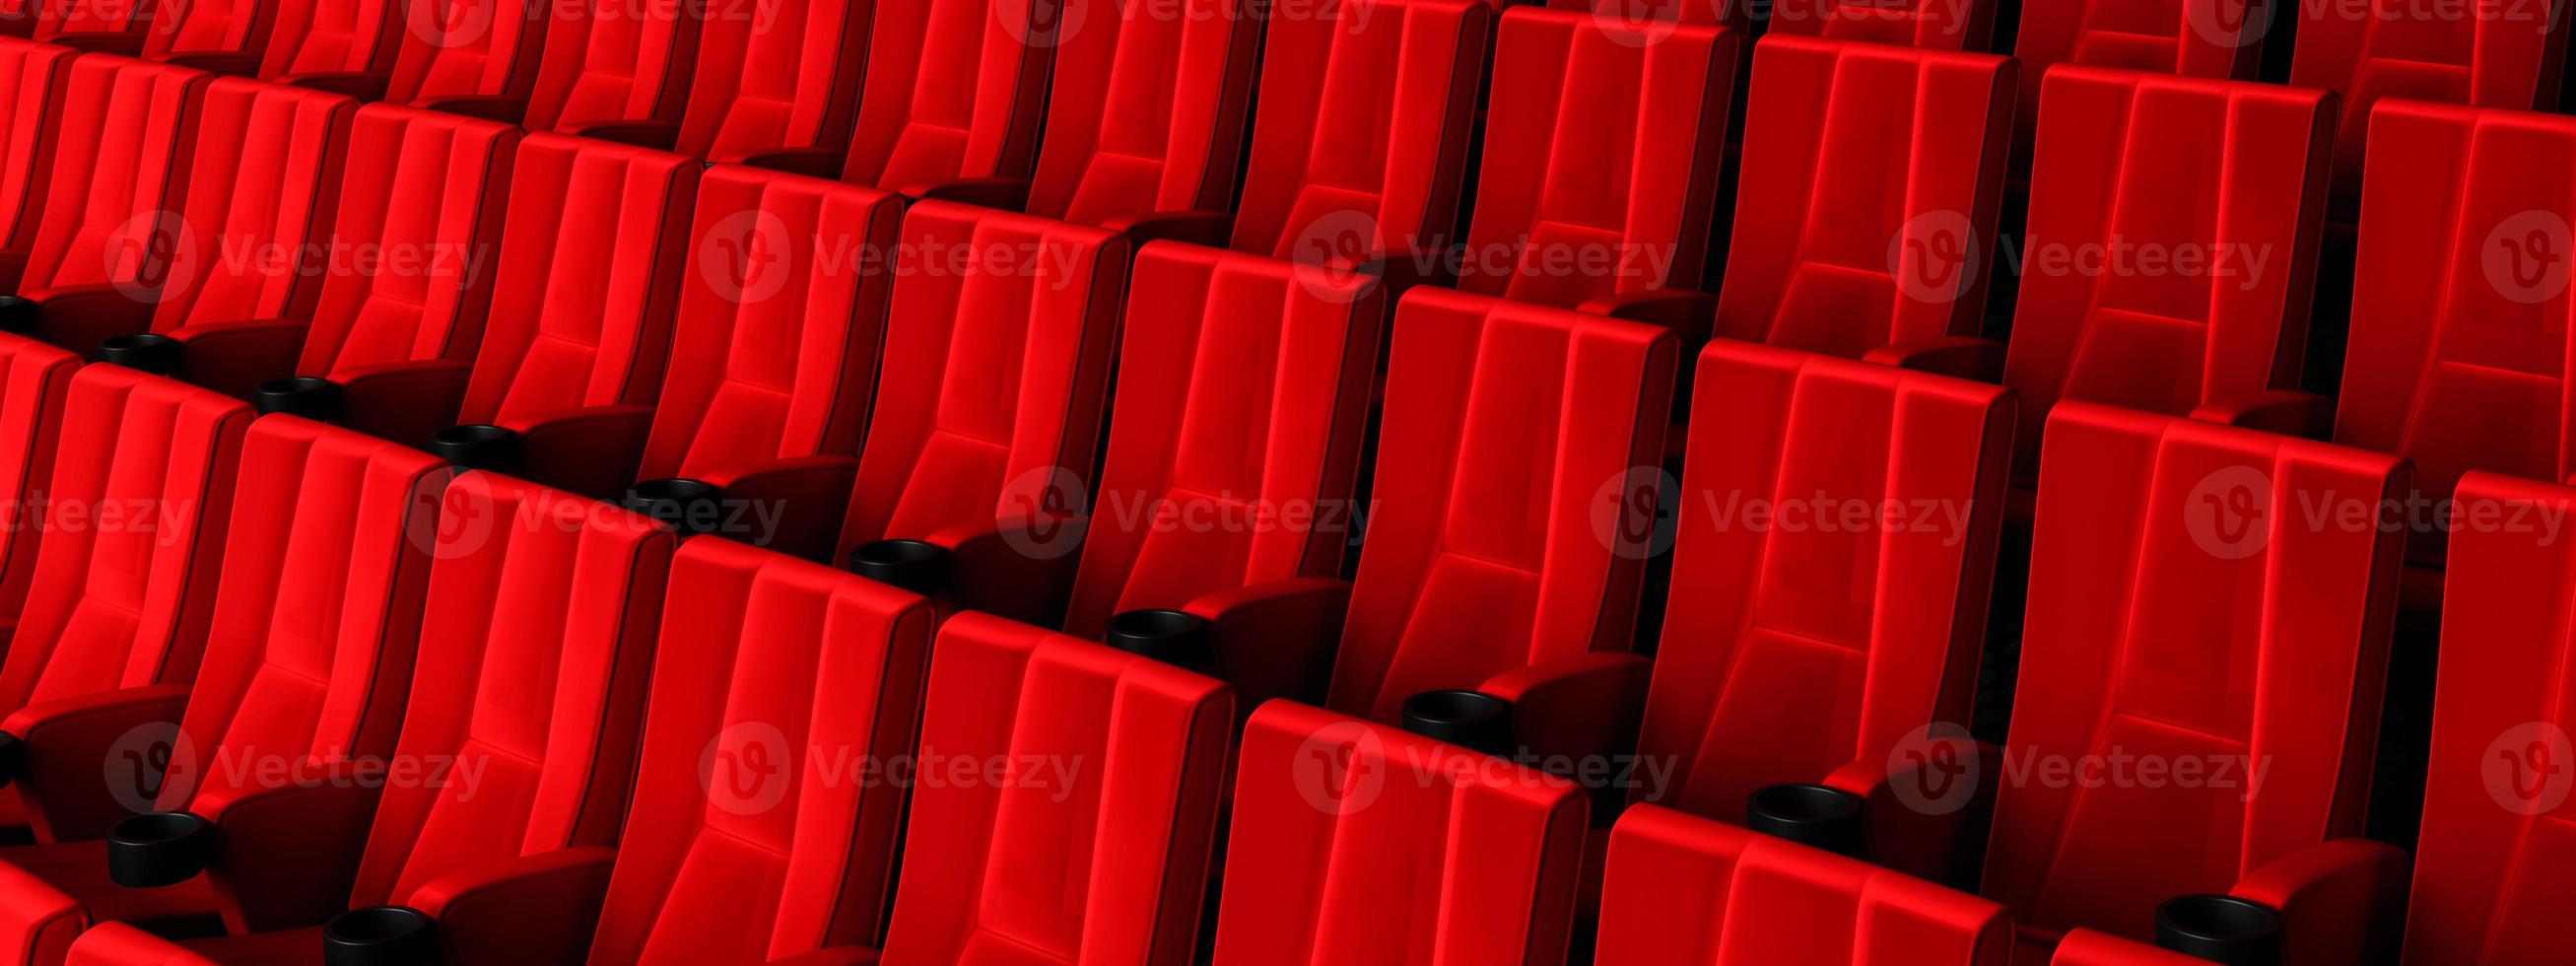 rangées de sièges en velours rouge regardant des films au cinéma avec fond de bannière d'espace de copie. concept de divertissement et de théâtre. rendu 3d photo